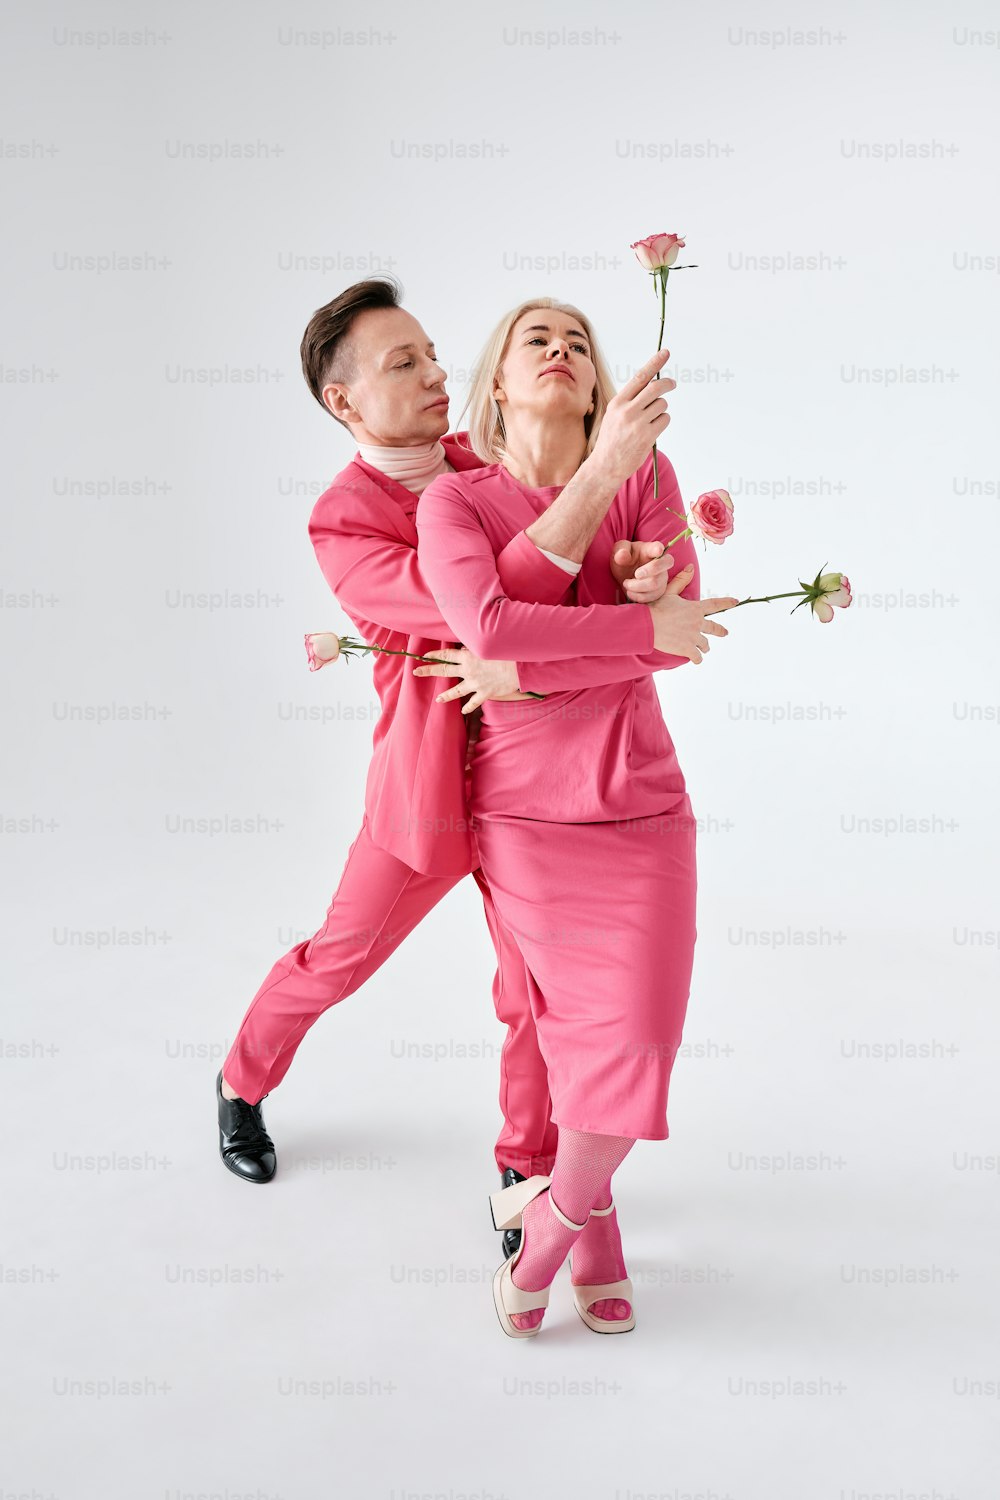 ピンクの服を着た男女がポーズをとって写真に撮っている